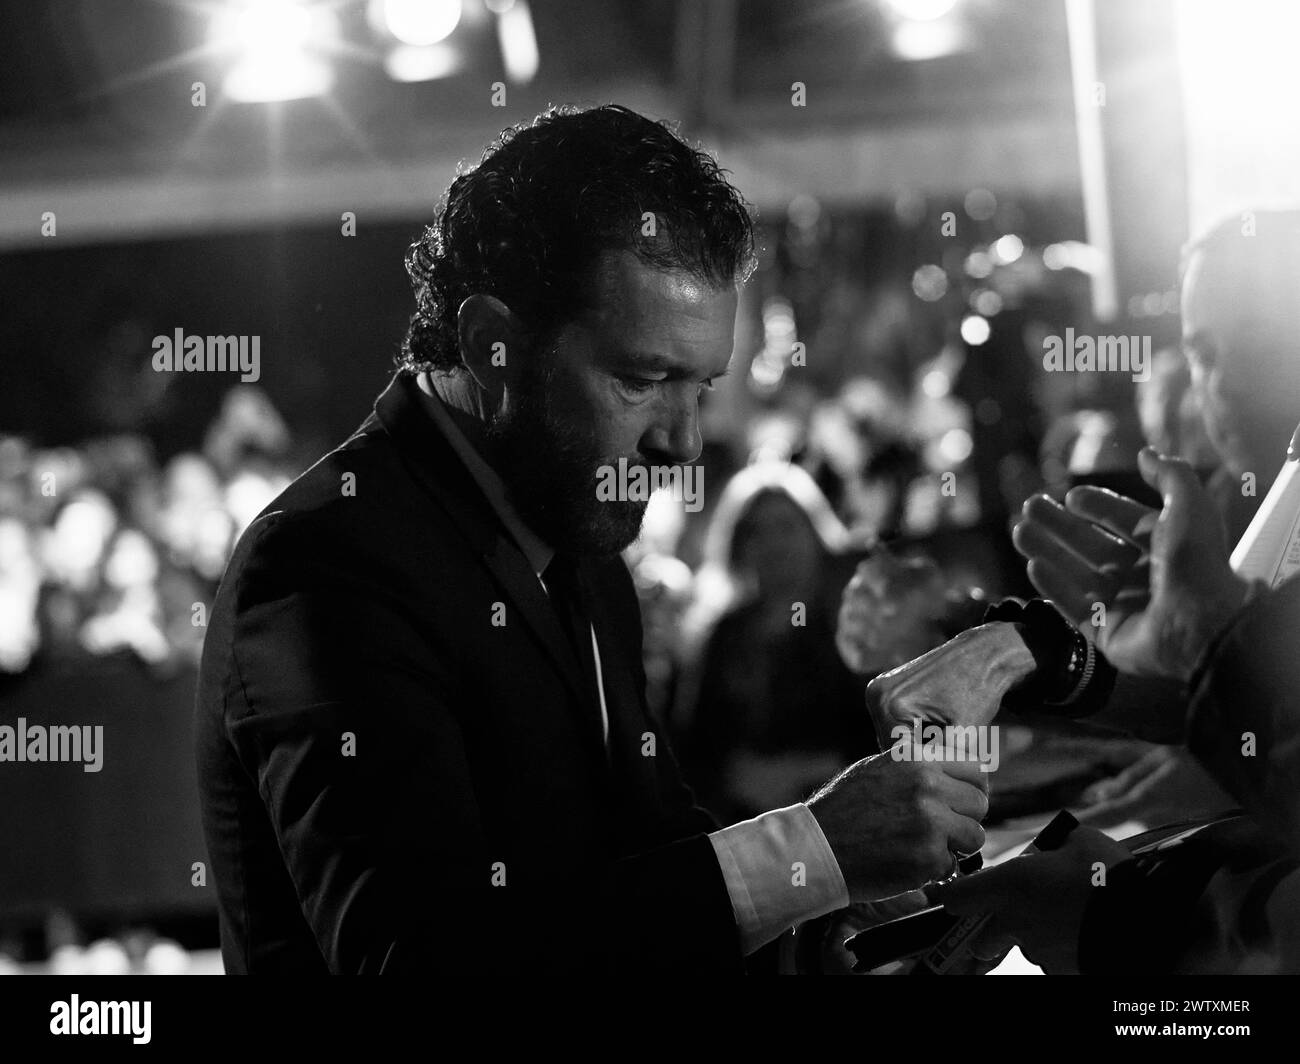 Zurigo / Svizzera, 26 settembre 2014. L'attore e regista Antonio Banderas firma autografi al Zurich Film Festival. Crediti: Walter Gilgen Foto Stock